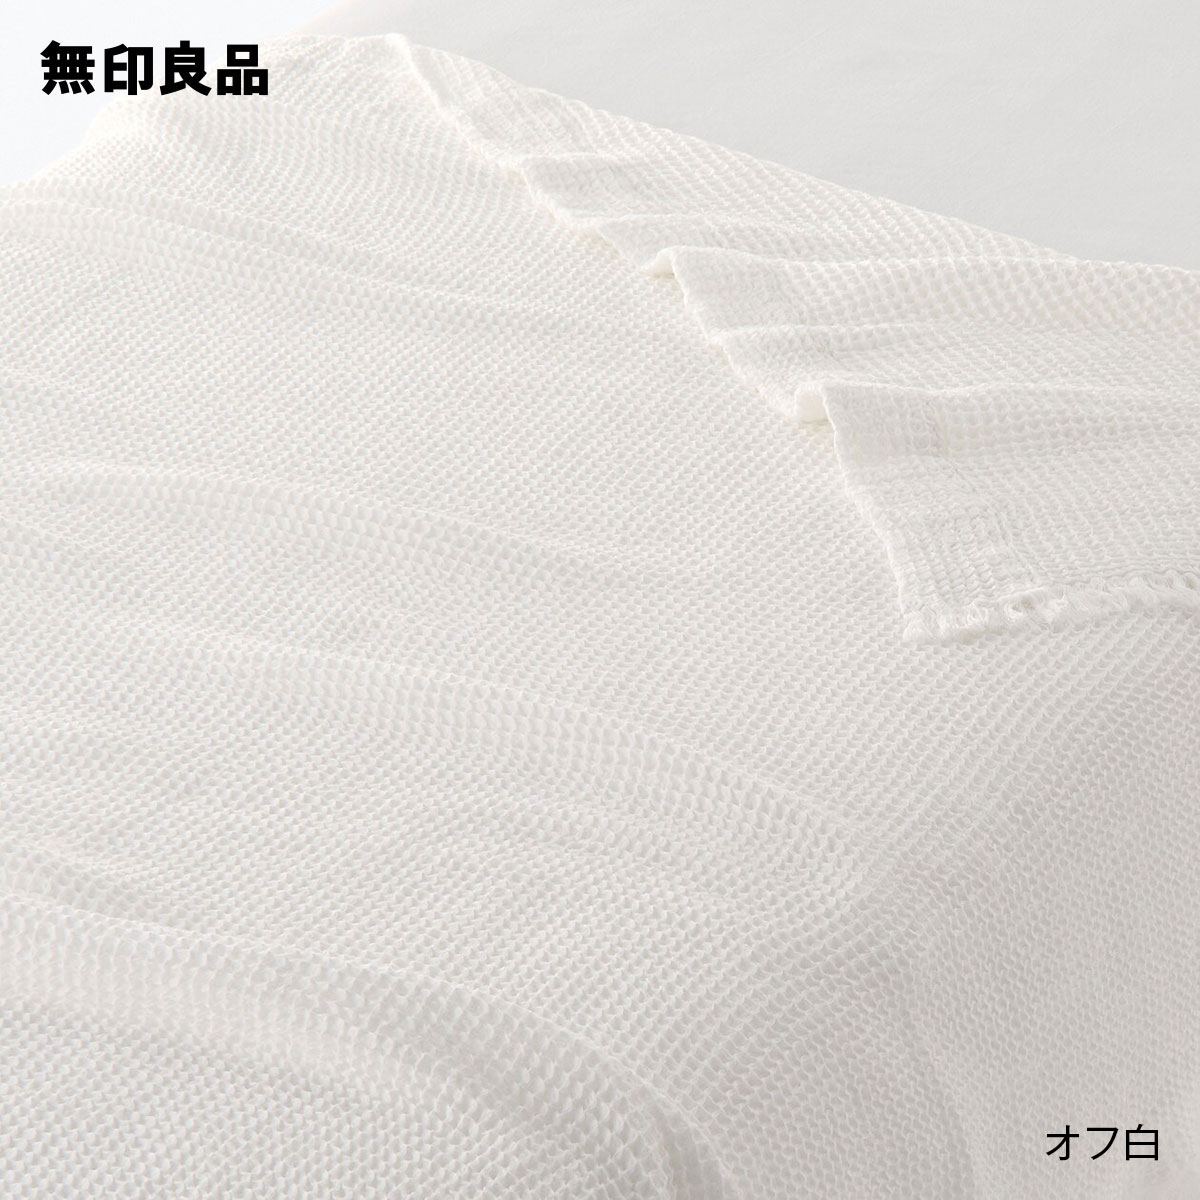 【無印良品 公式】ワッフル織ケット・ダブル 180×200cm